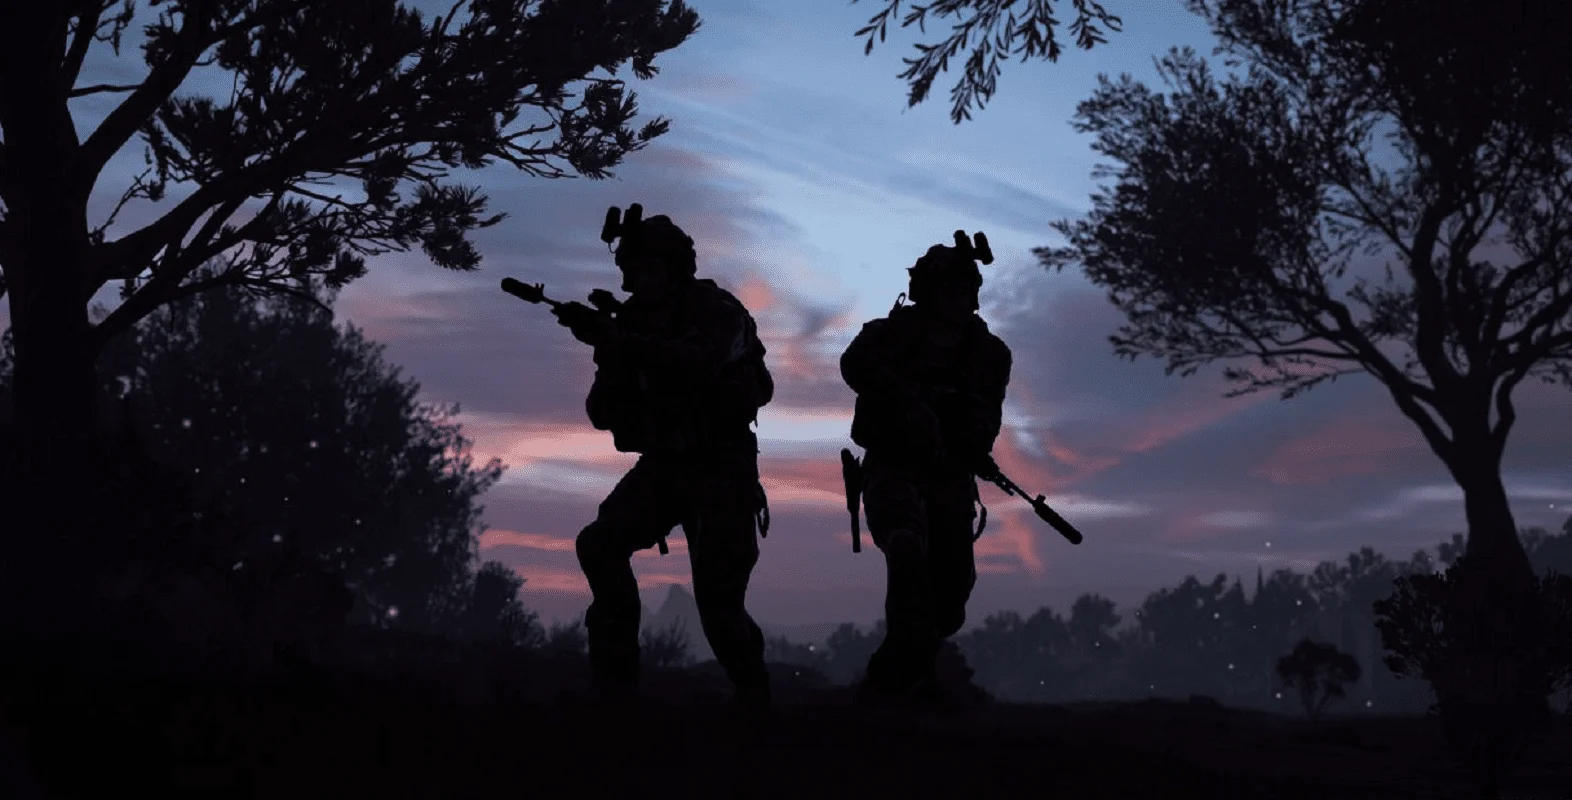 Couverture : capture d'écran du jeu Call of Duty : Modern Warfare 2